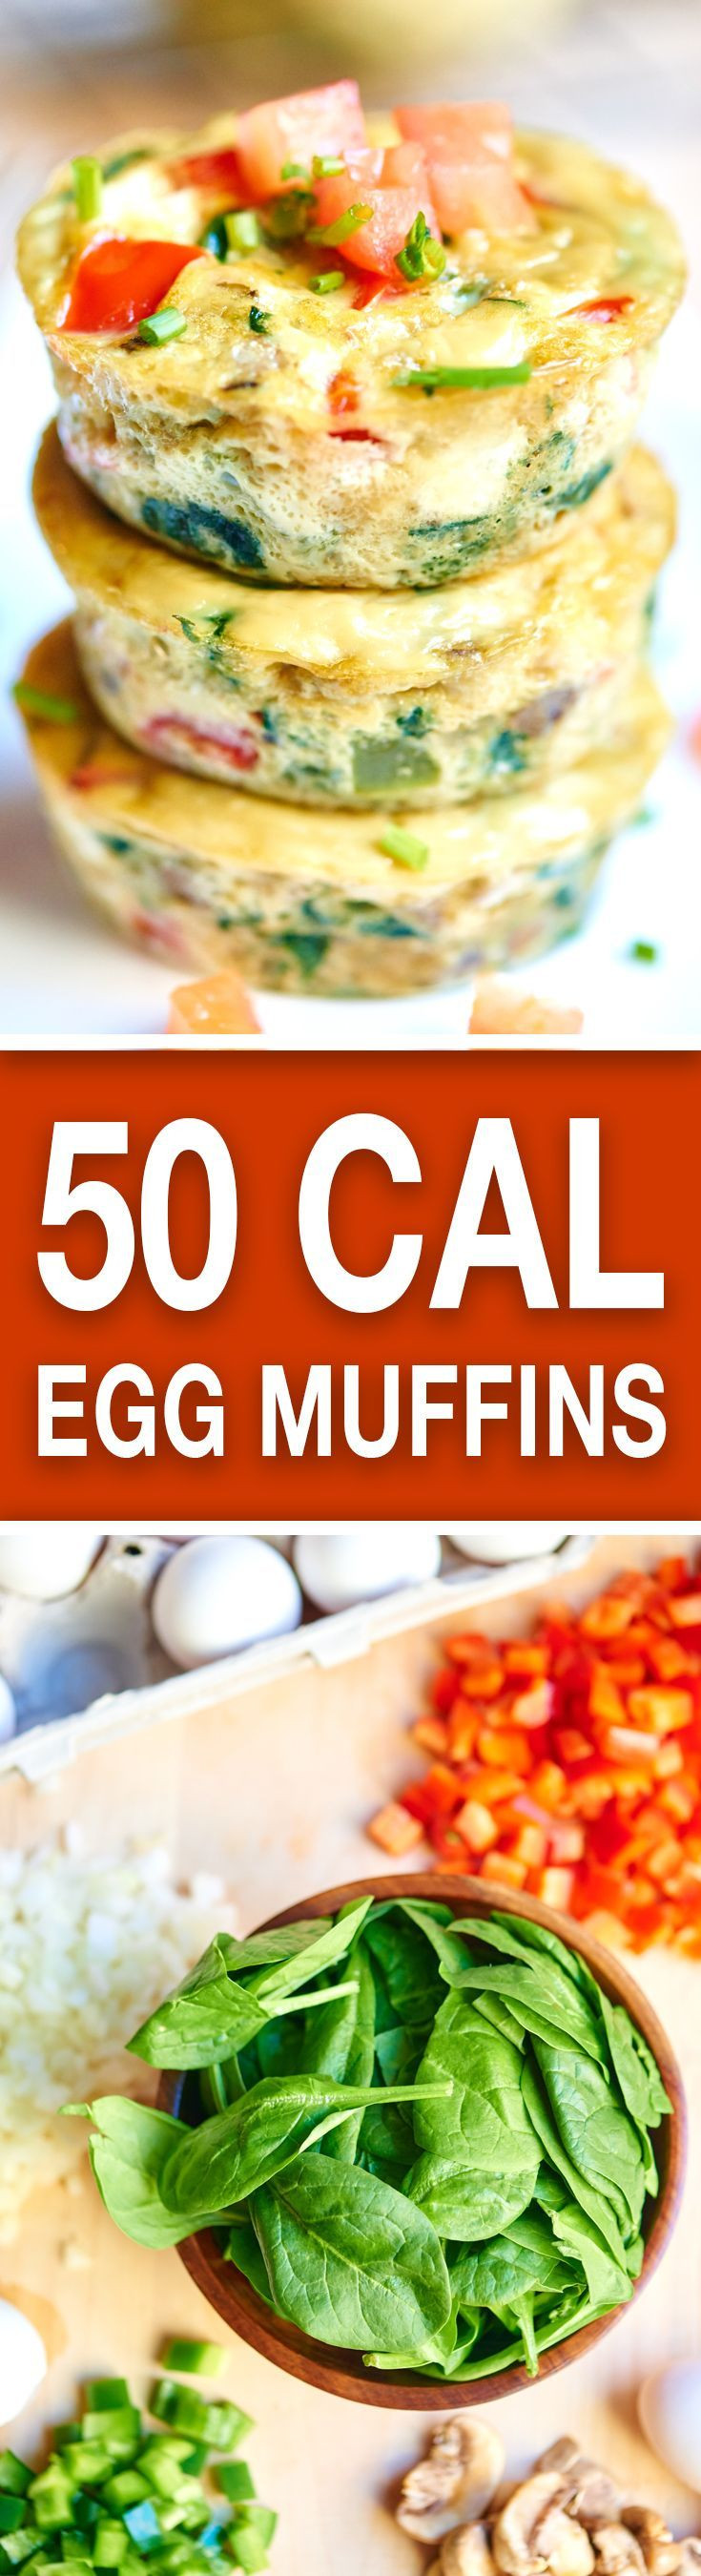 Healthy Low Calorie Breakfast Ideas
 1000 ideas about Low Calorie Breakfast on Pinterest